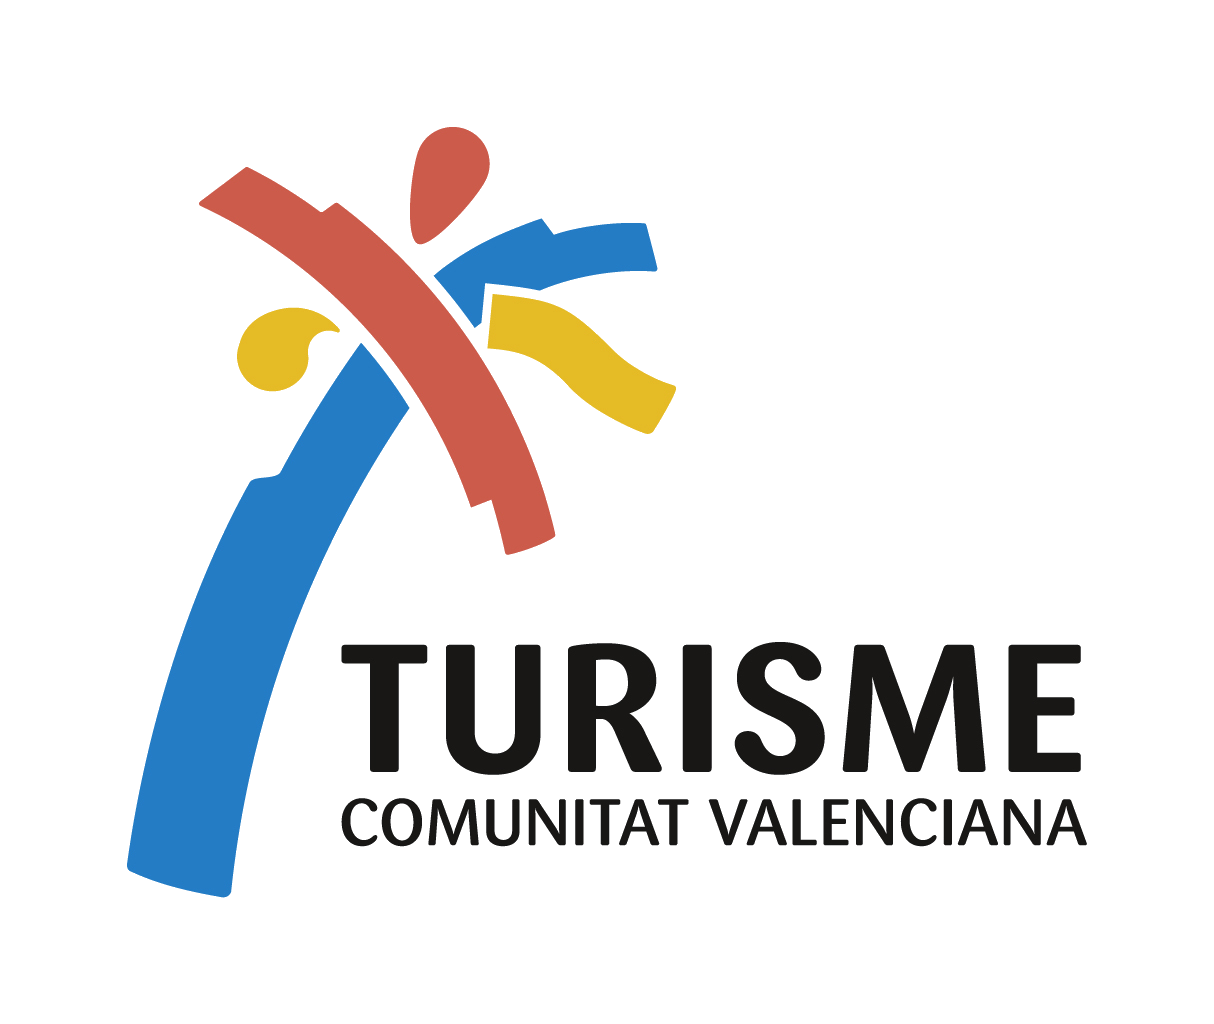 Region of Valencia - Turisme Comunitat Valenciana